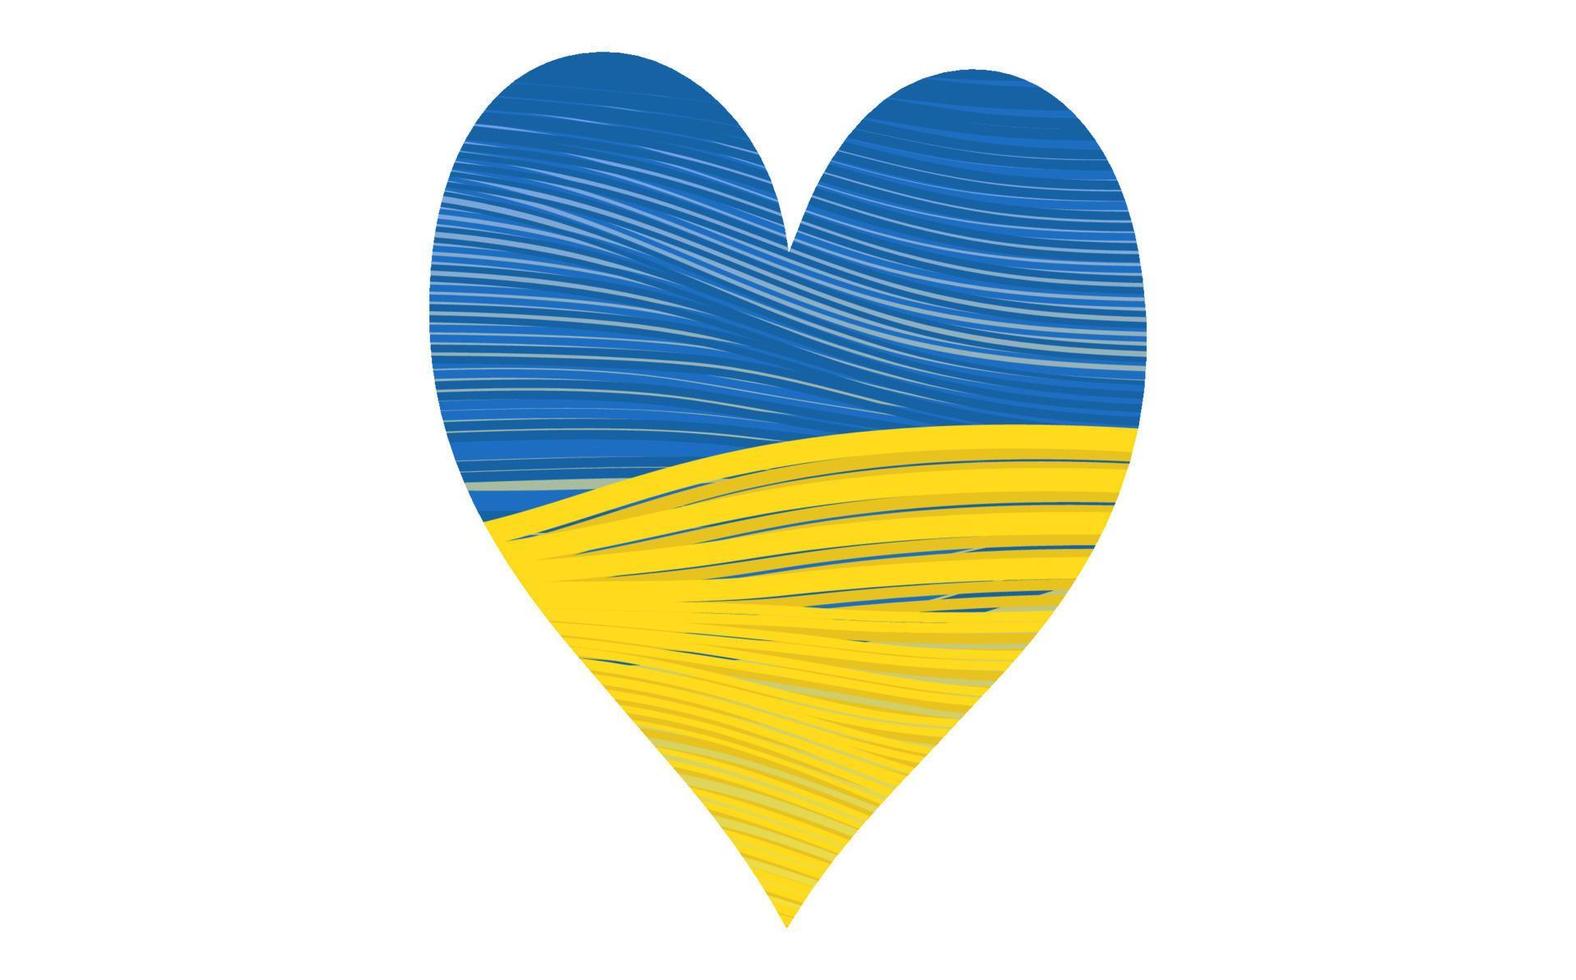 ukrainische Nationalflagge, Herzform-Symbol mit Farben der ukrainischen Flagge. gestreifter Musterstil. symbol, plakat, banner der krise im ukraine-konzept. Vektor isoliert auf weißem Hintergrund